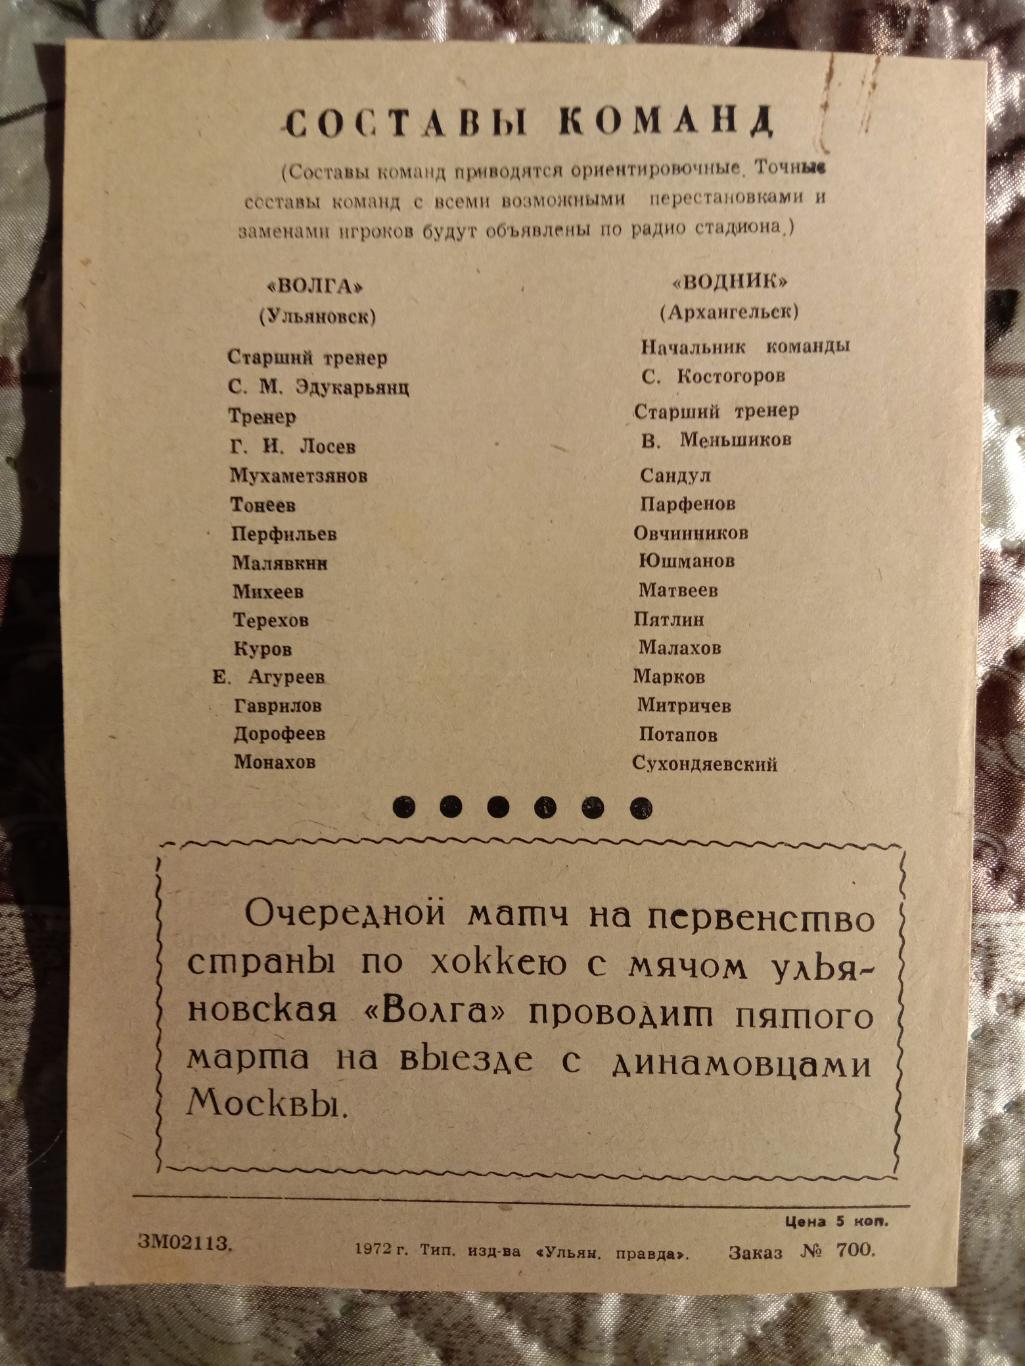 Волг Ульяновска - Водник Архангельск. 2 марта 1972 года. 1